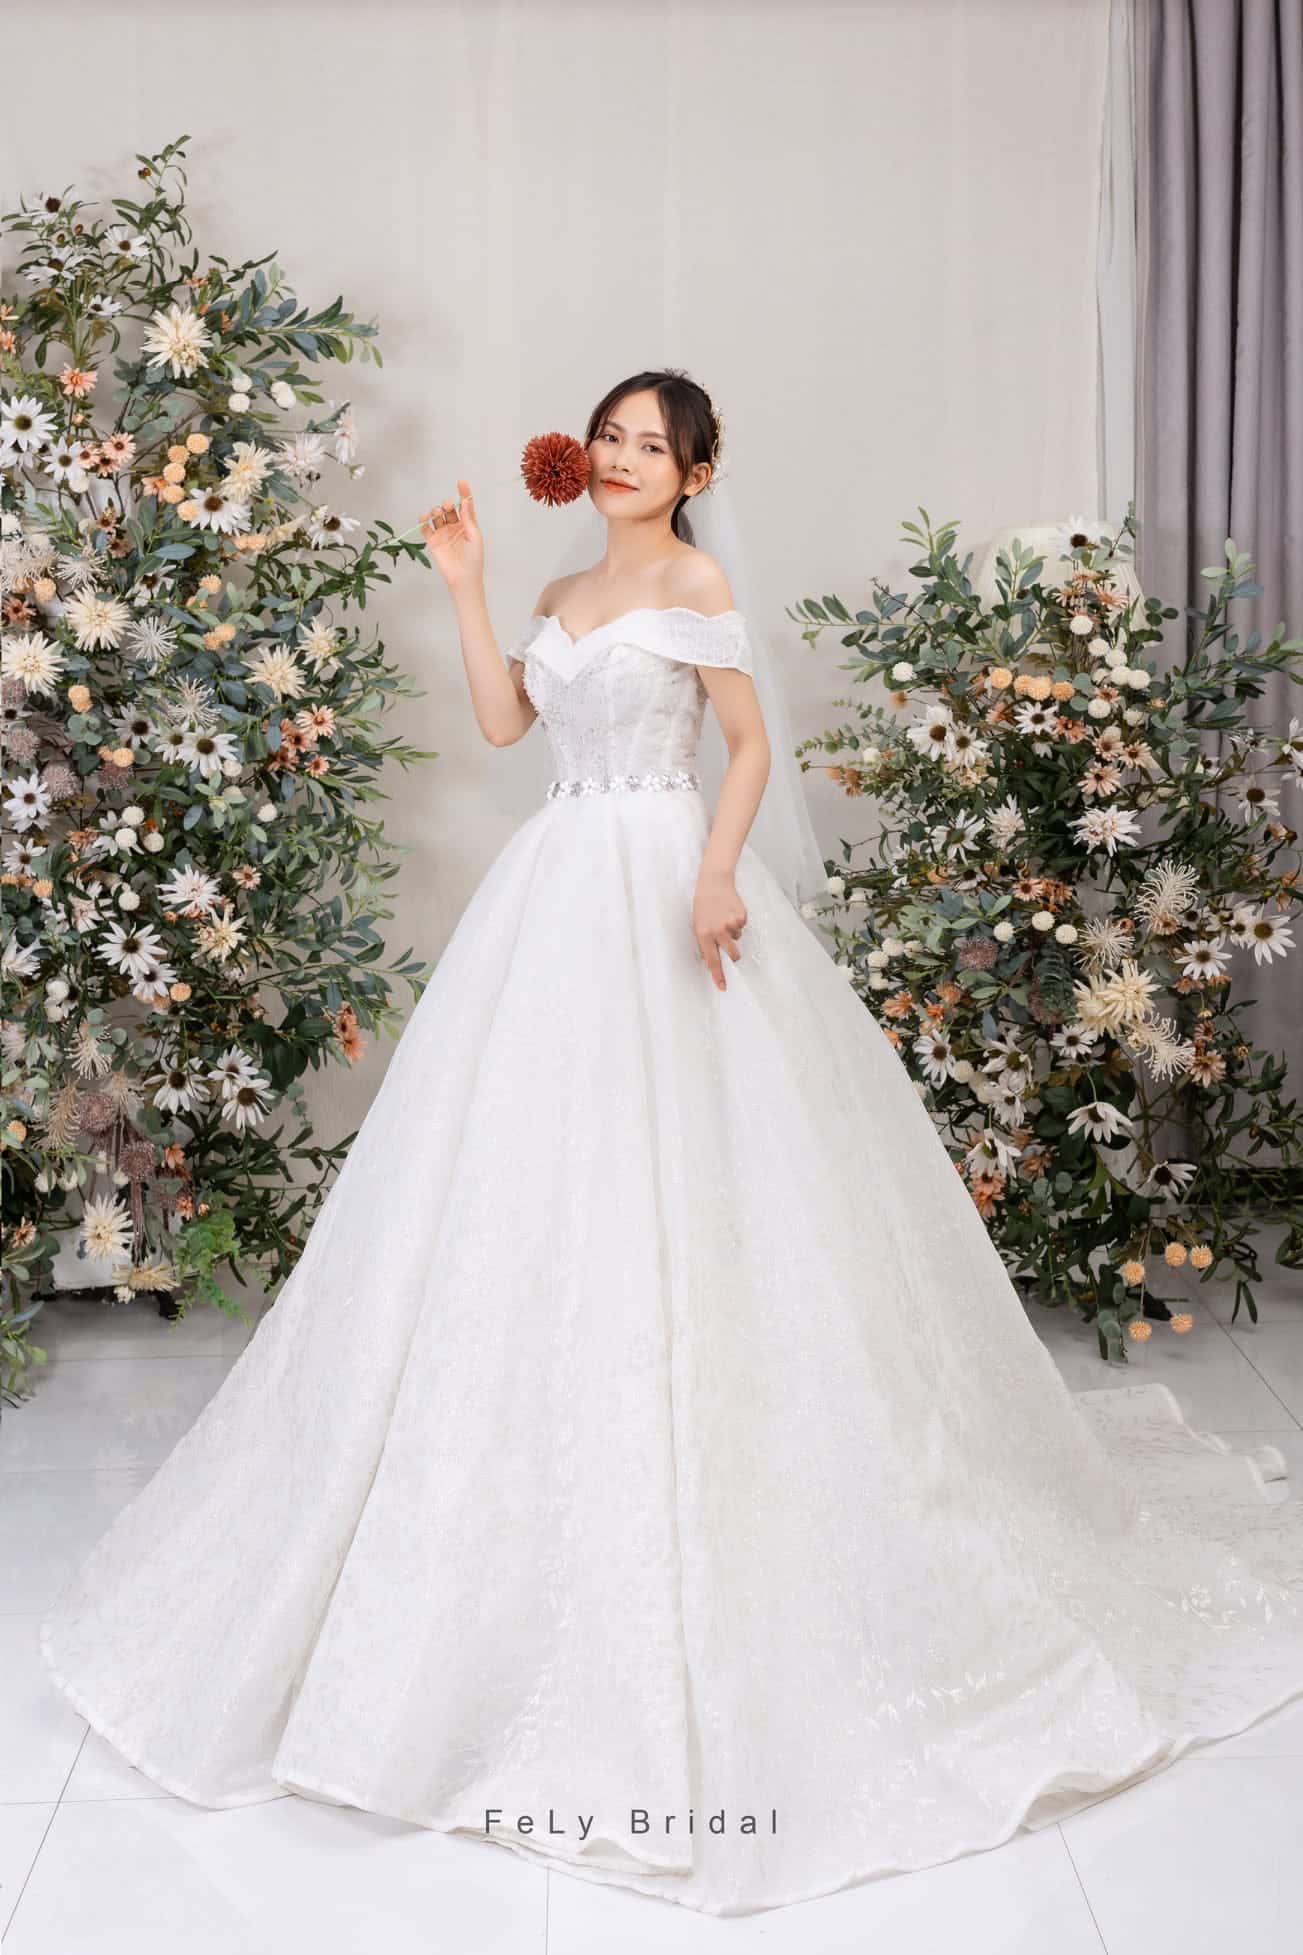 Cận cảnh 3 mẫu váy cưới Ngô Thanh Vân lựa chọn cho hôn lễ